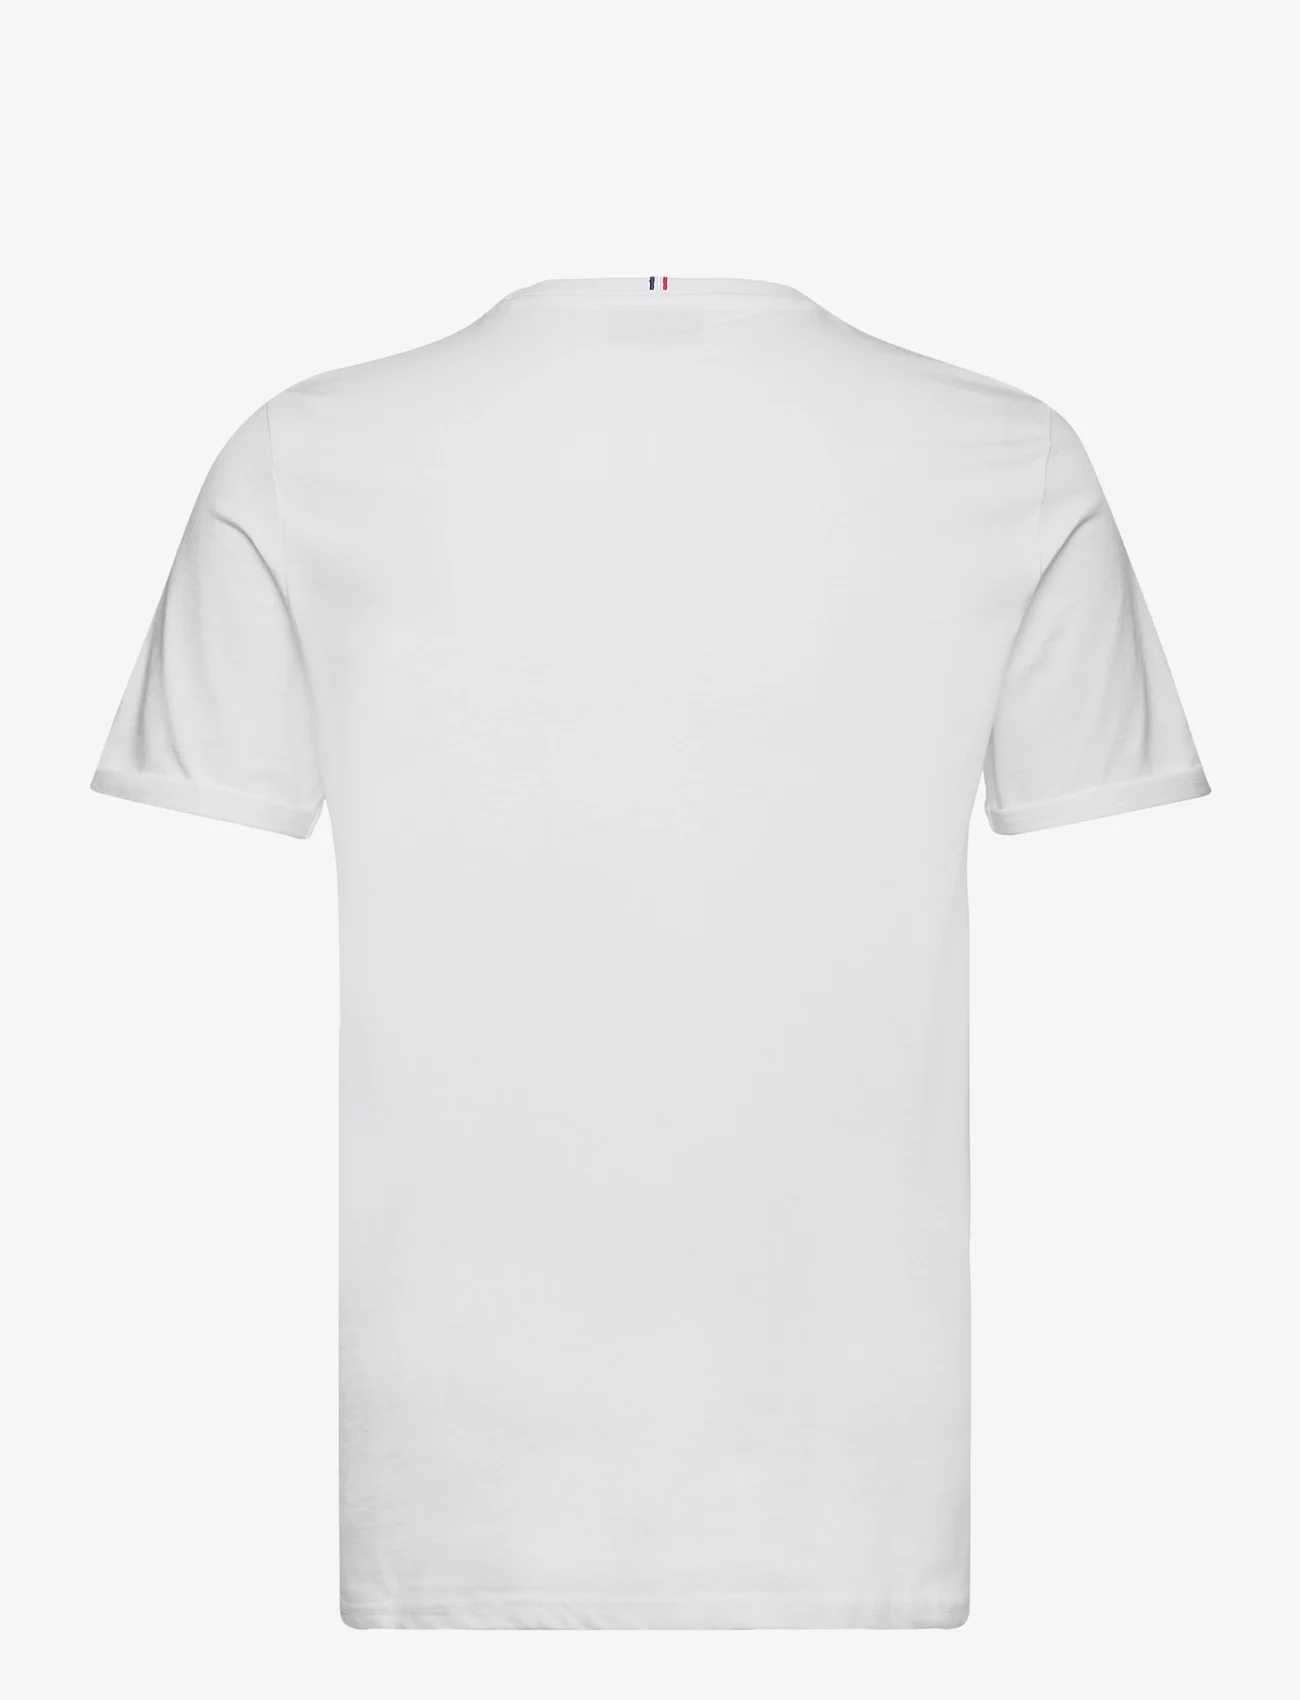 Les Deux - Piece T-Shirt - laveste priser - white/charcoal-mint - 1